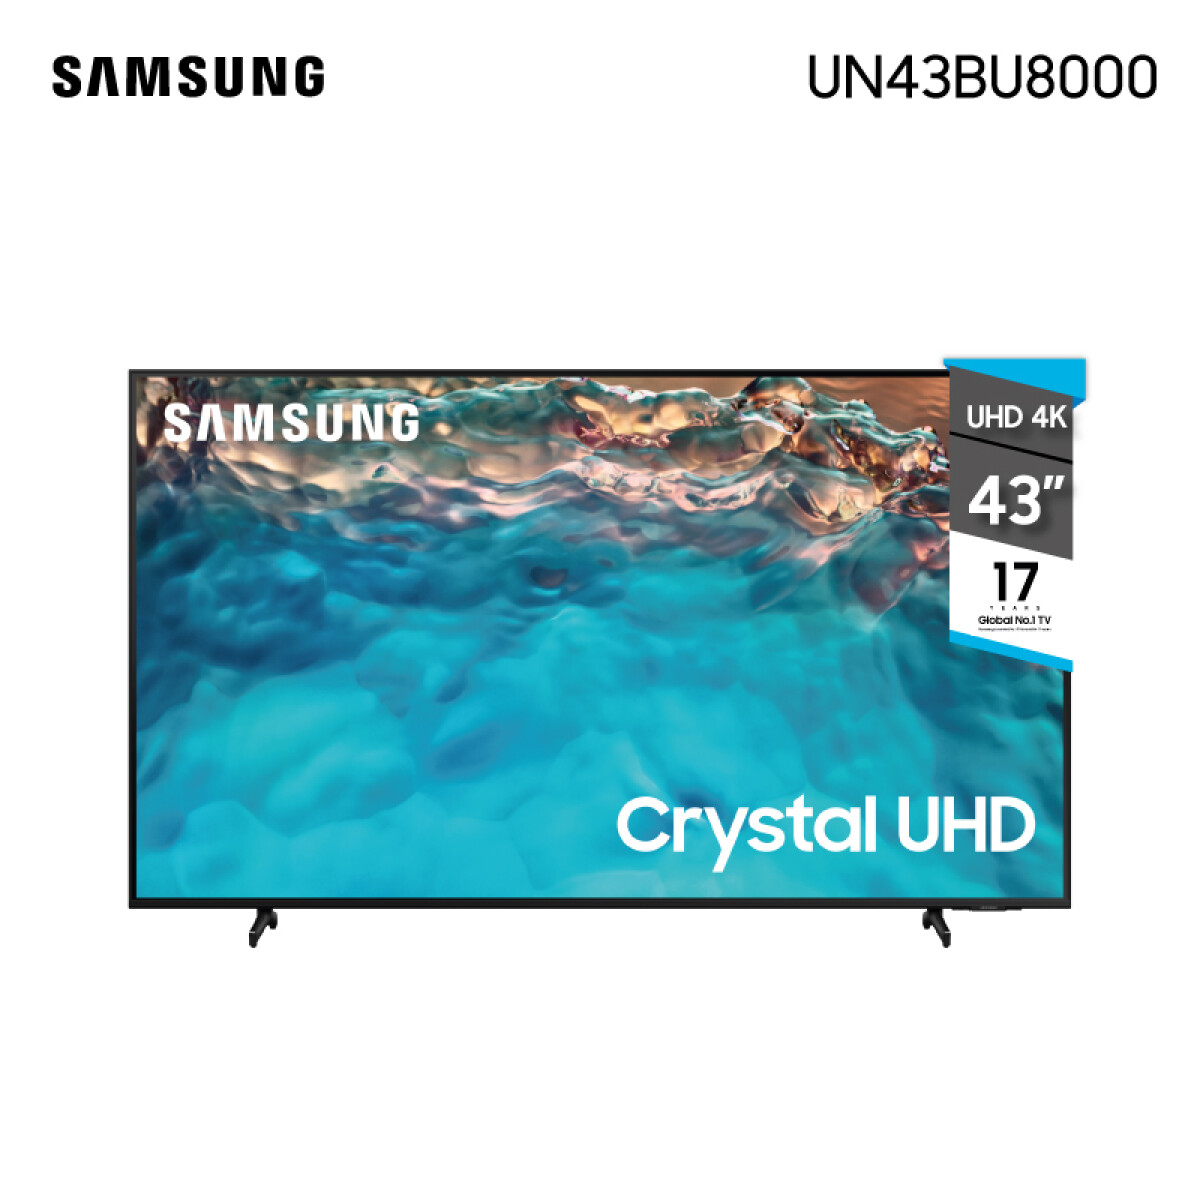 Smart Tv Samsung 43' 4k Uhd Control Con Comando De Voz Un43bu80000 